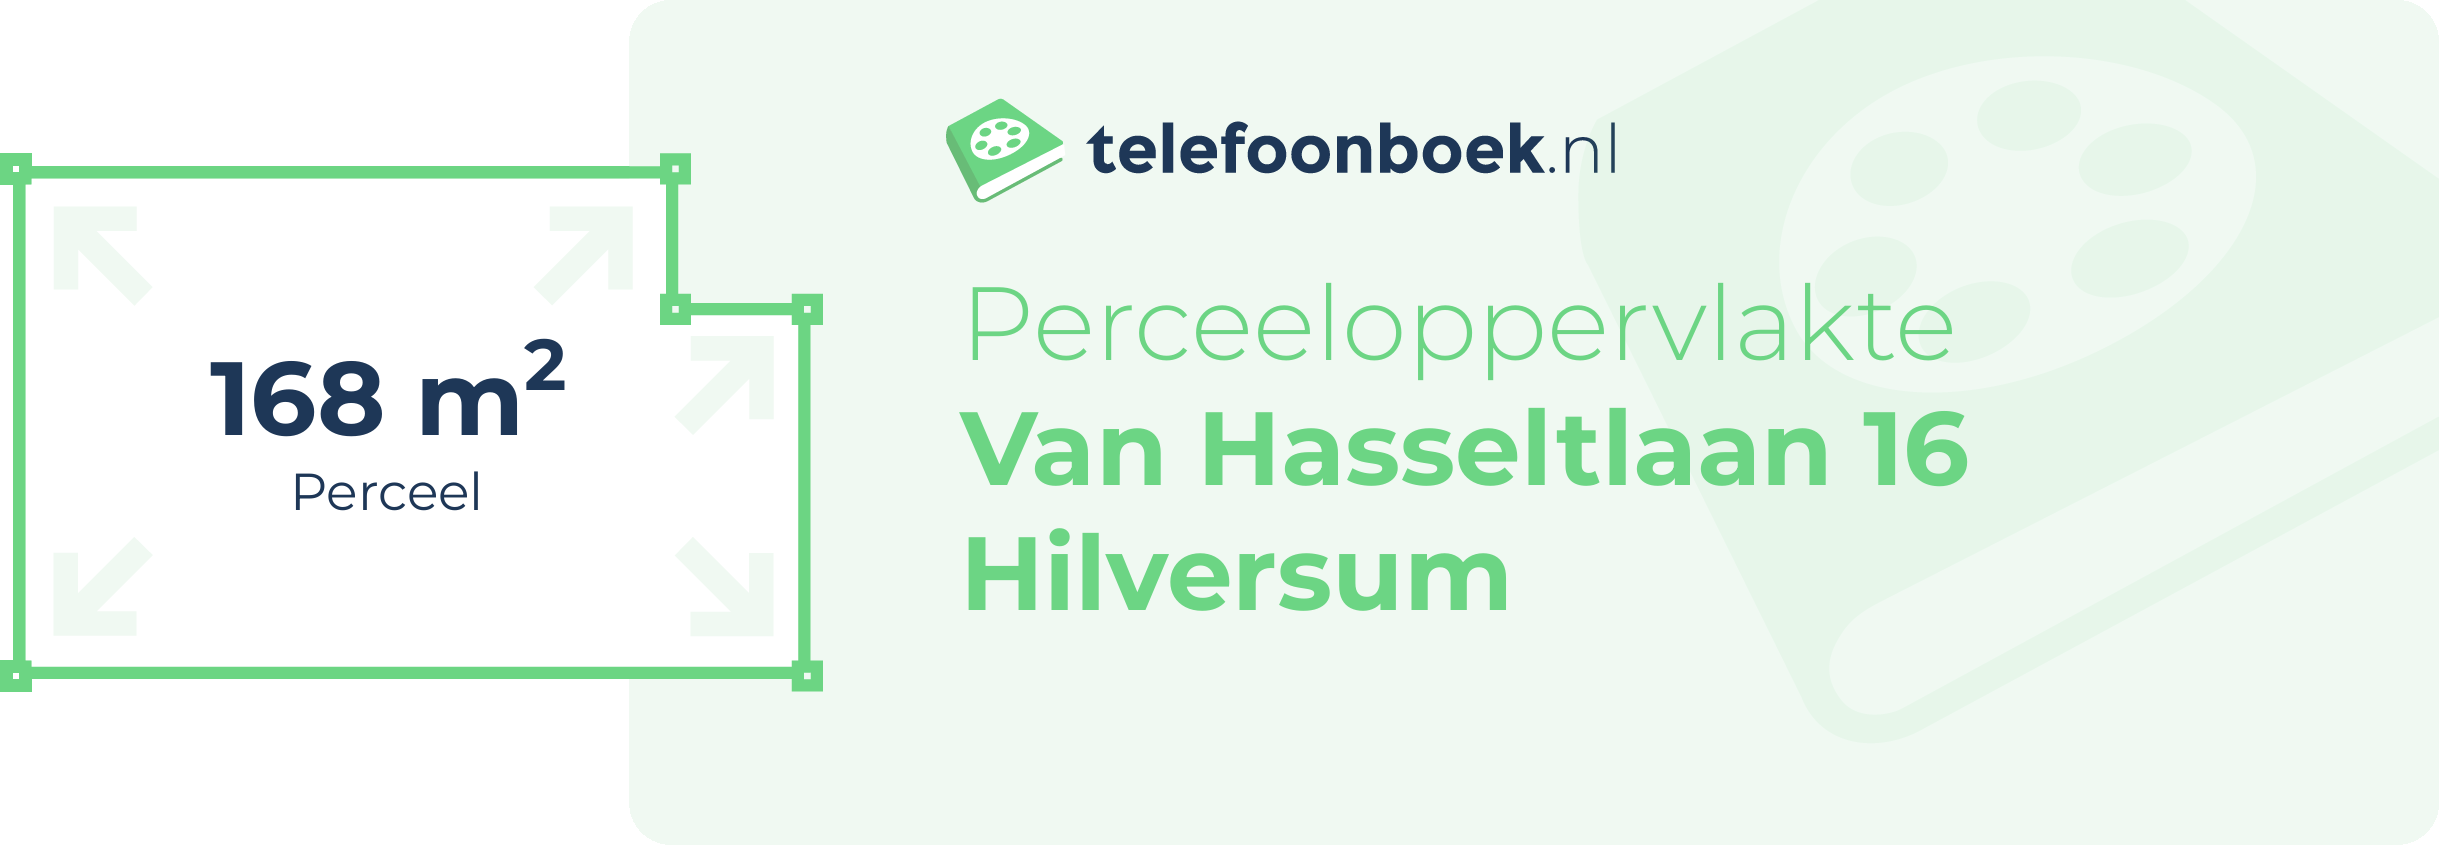 Perceeloppervlakte Van Hasseltlaan 16 Hilversum